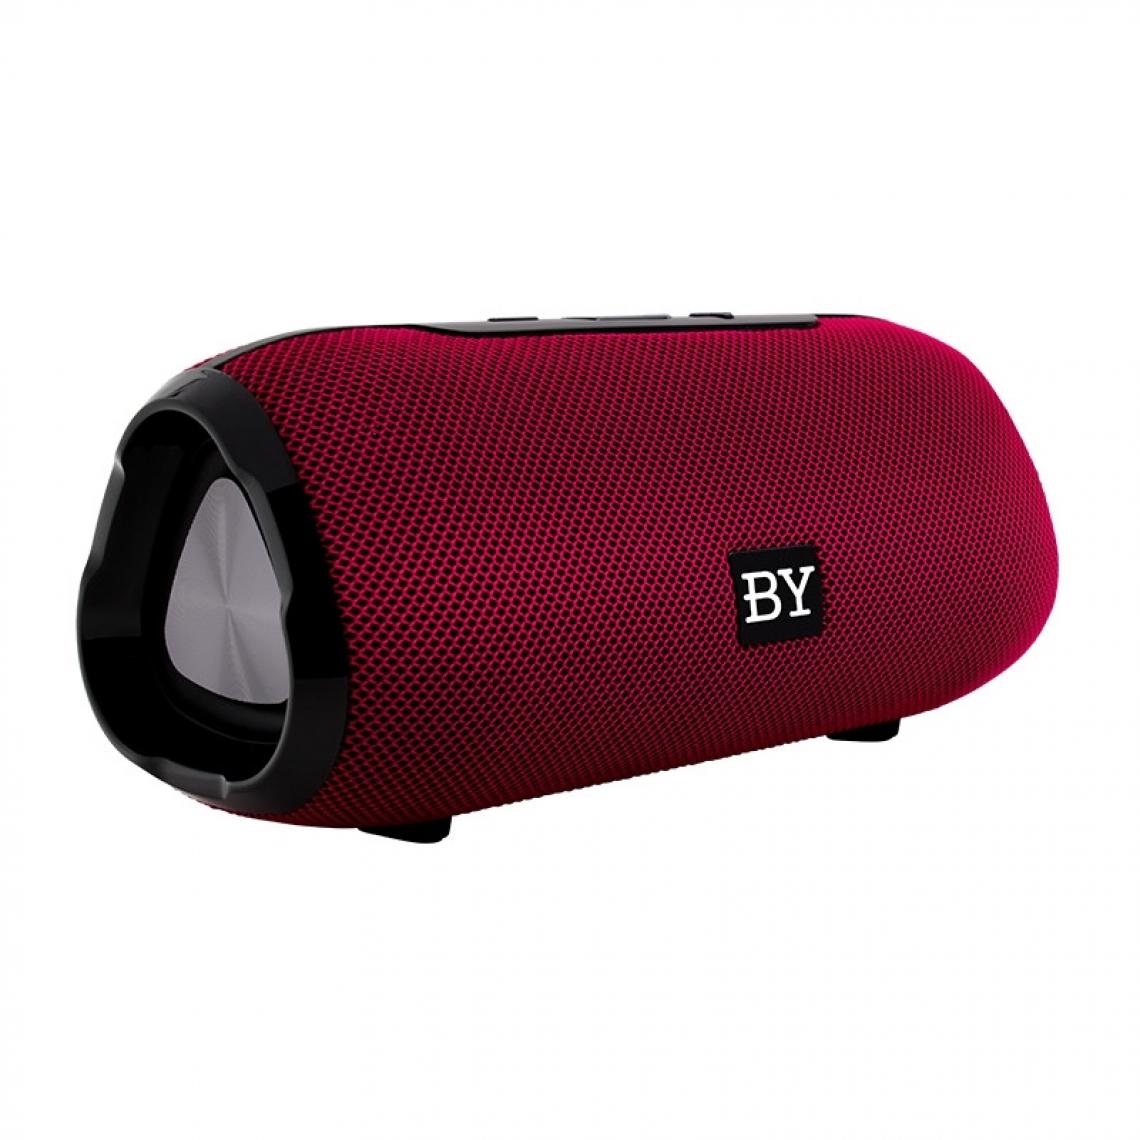 Wewoo - Enceinte Bluetooth BY Portable Haut-parleur Étanche 3D Stéréo Musique Surround Système de sonorisation extérieure Support TF AUX Rouge - Enceintes Hifi